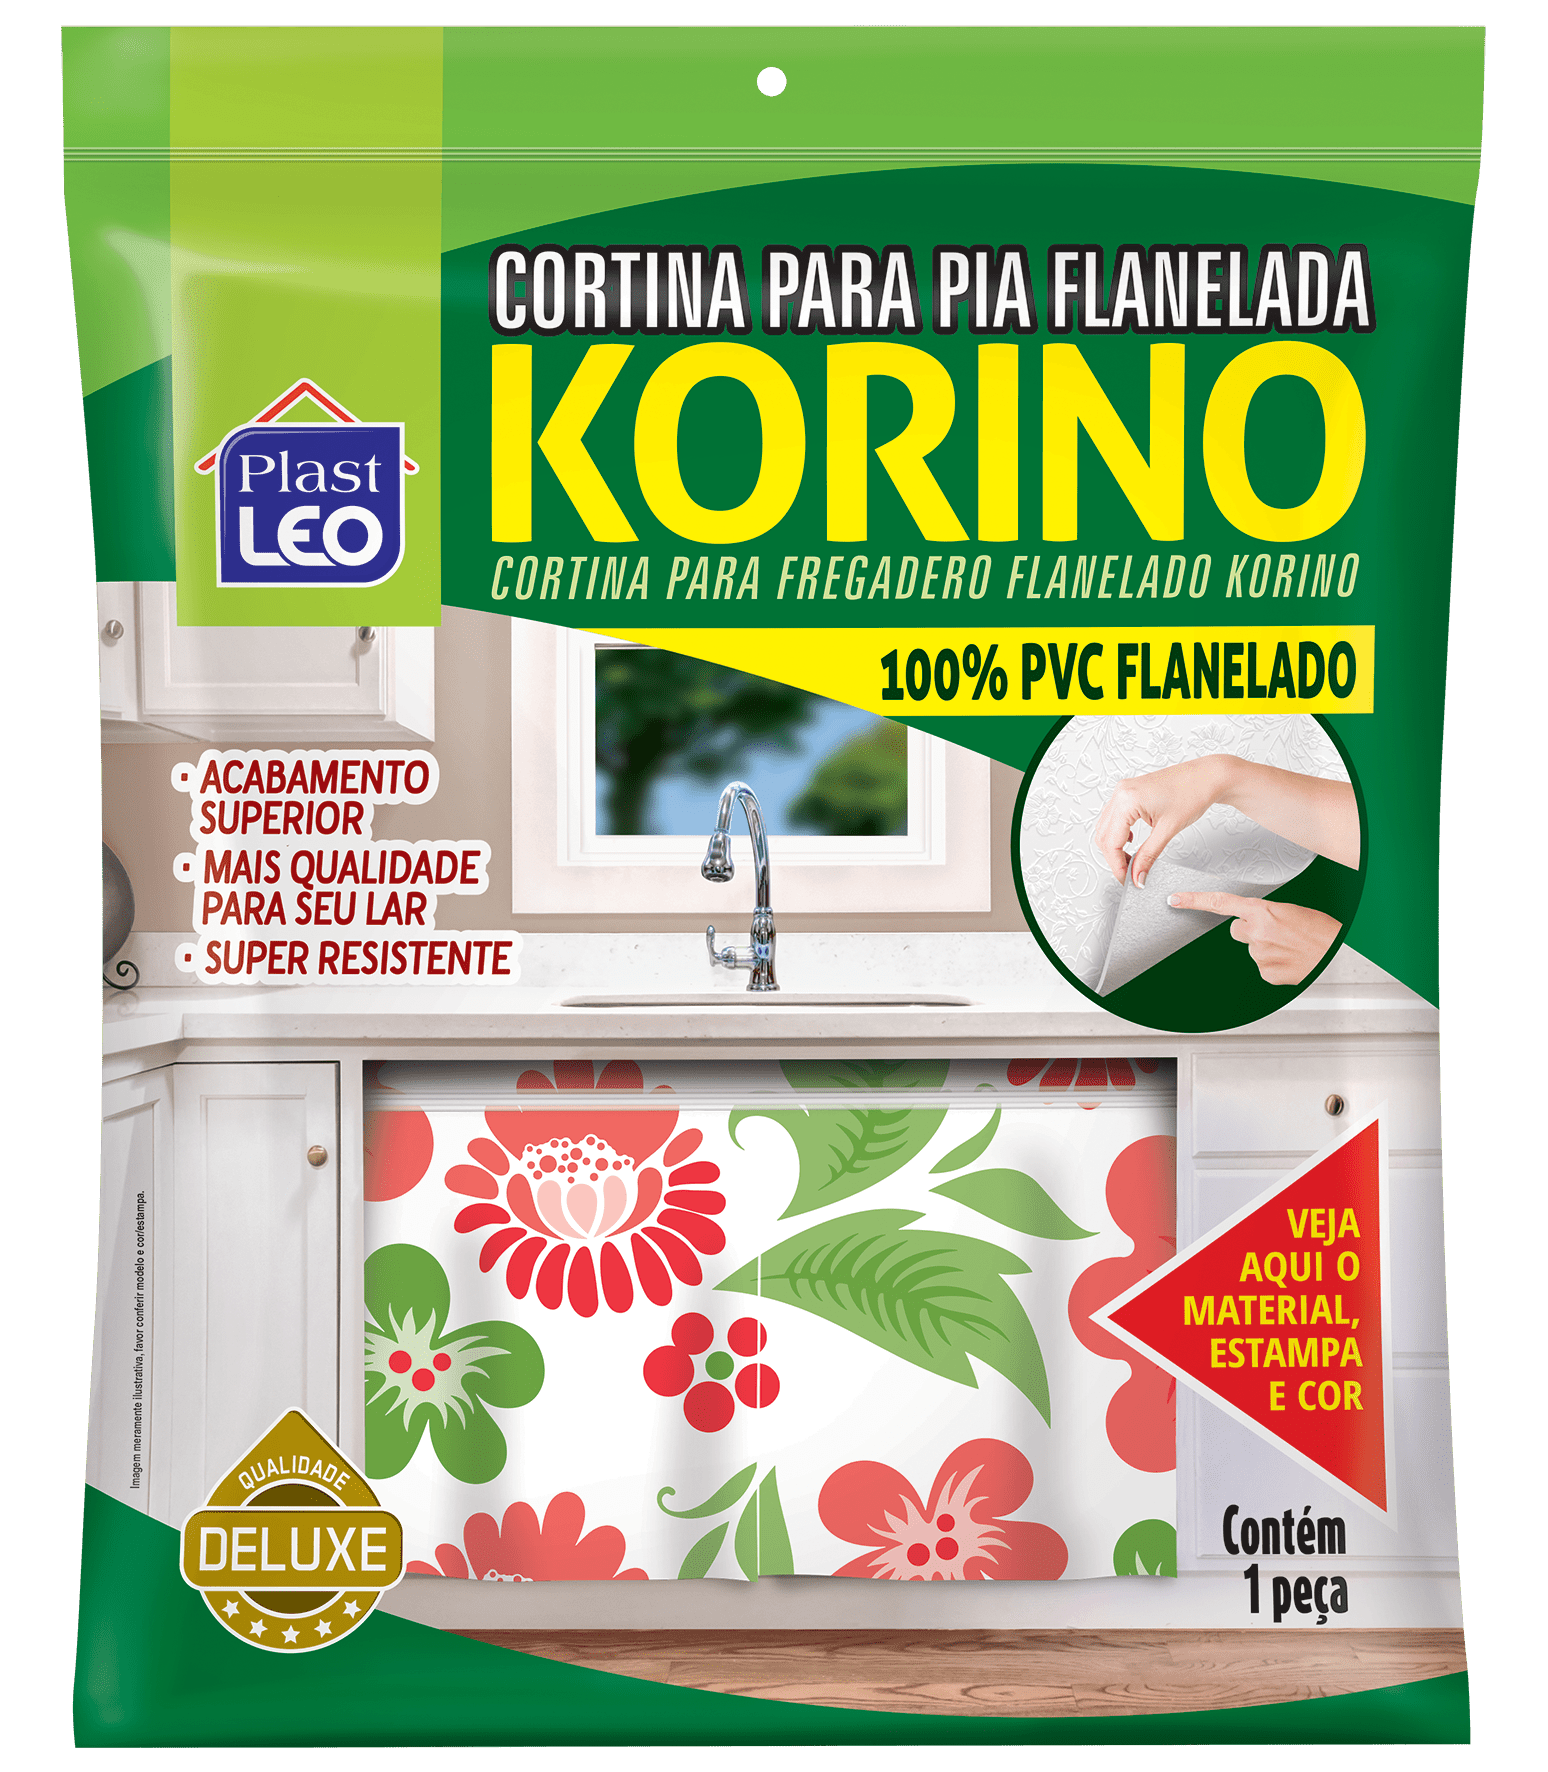 Cortina de Pia Flanelado PVC Korino